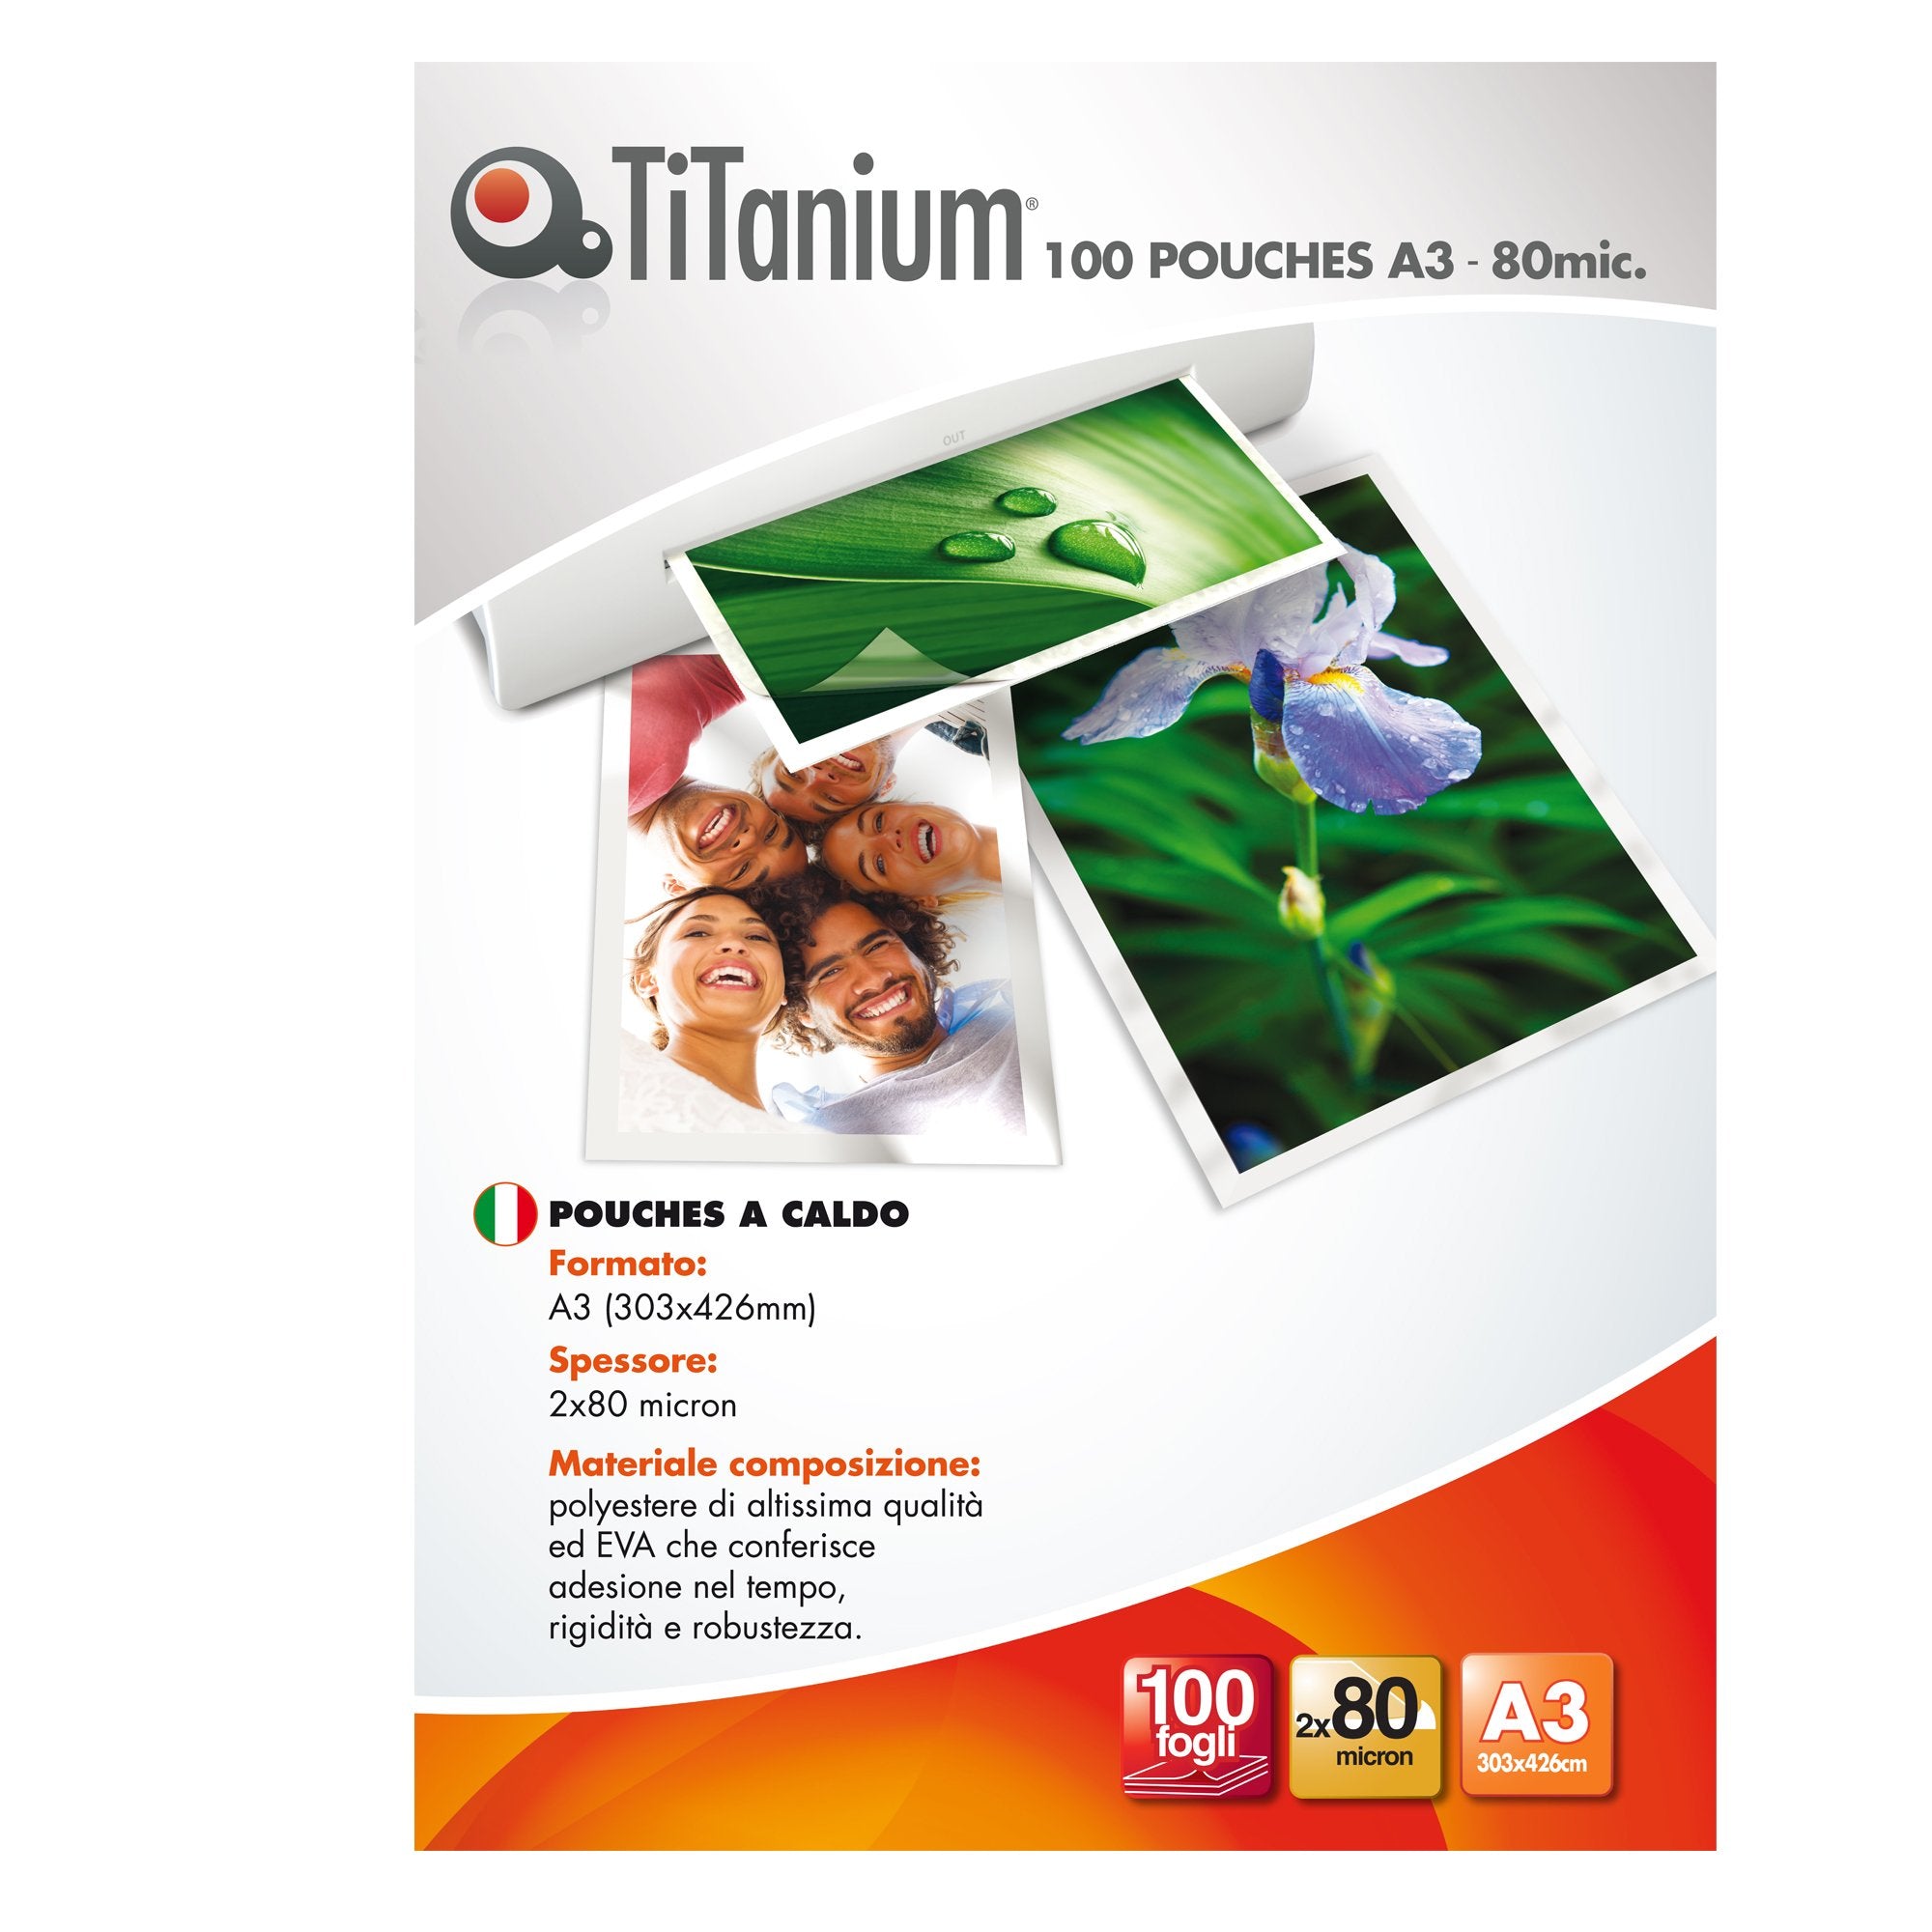 titanium-100-pouches-303x426mm-a3-80my